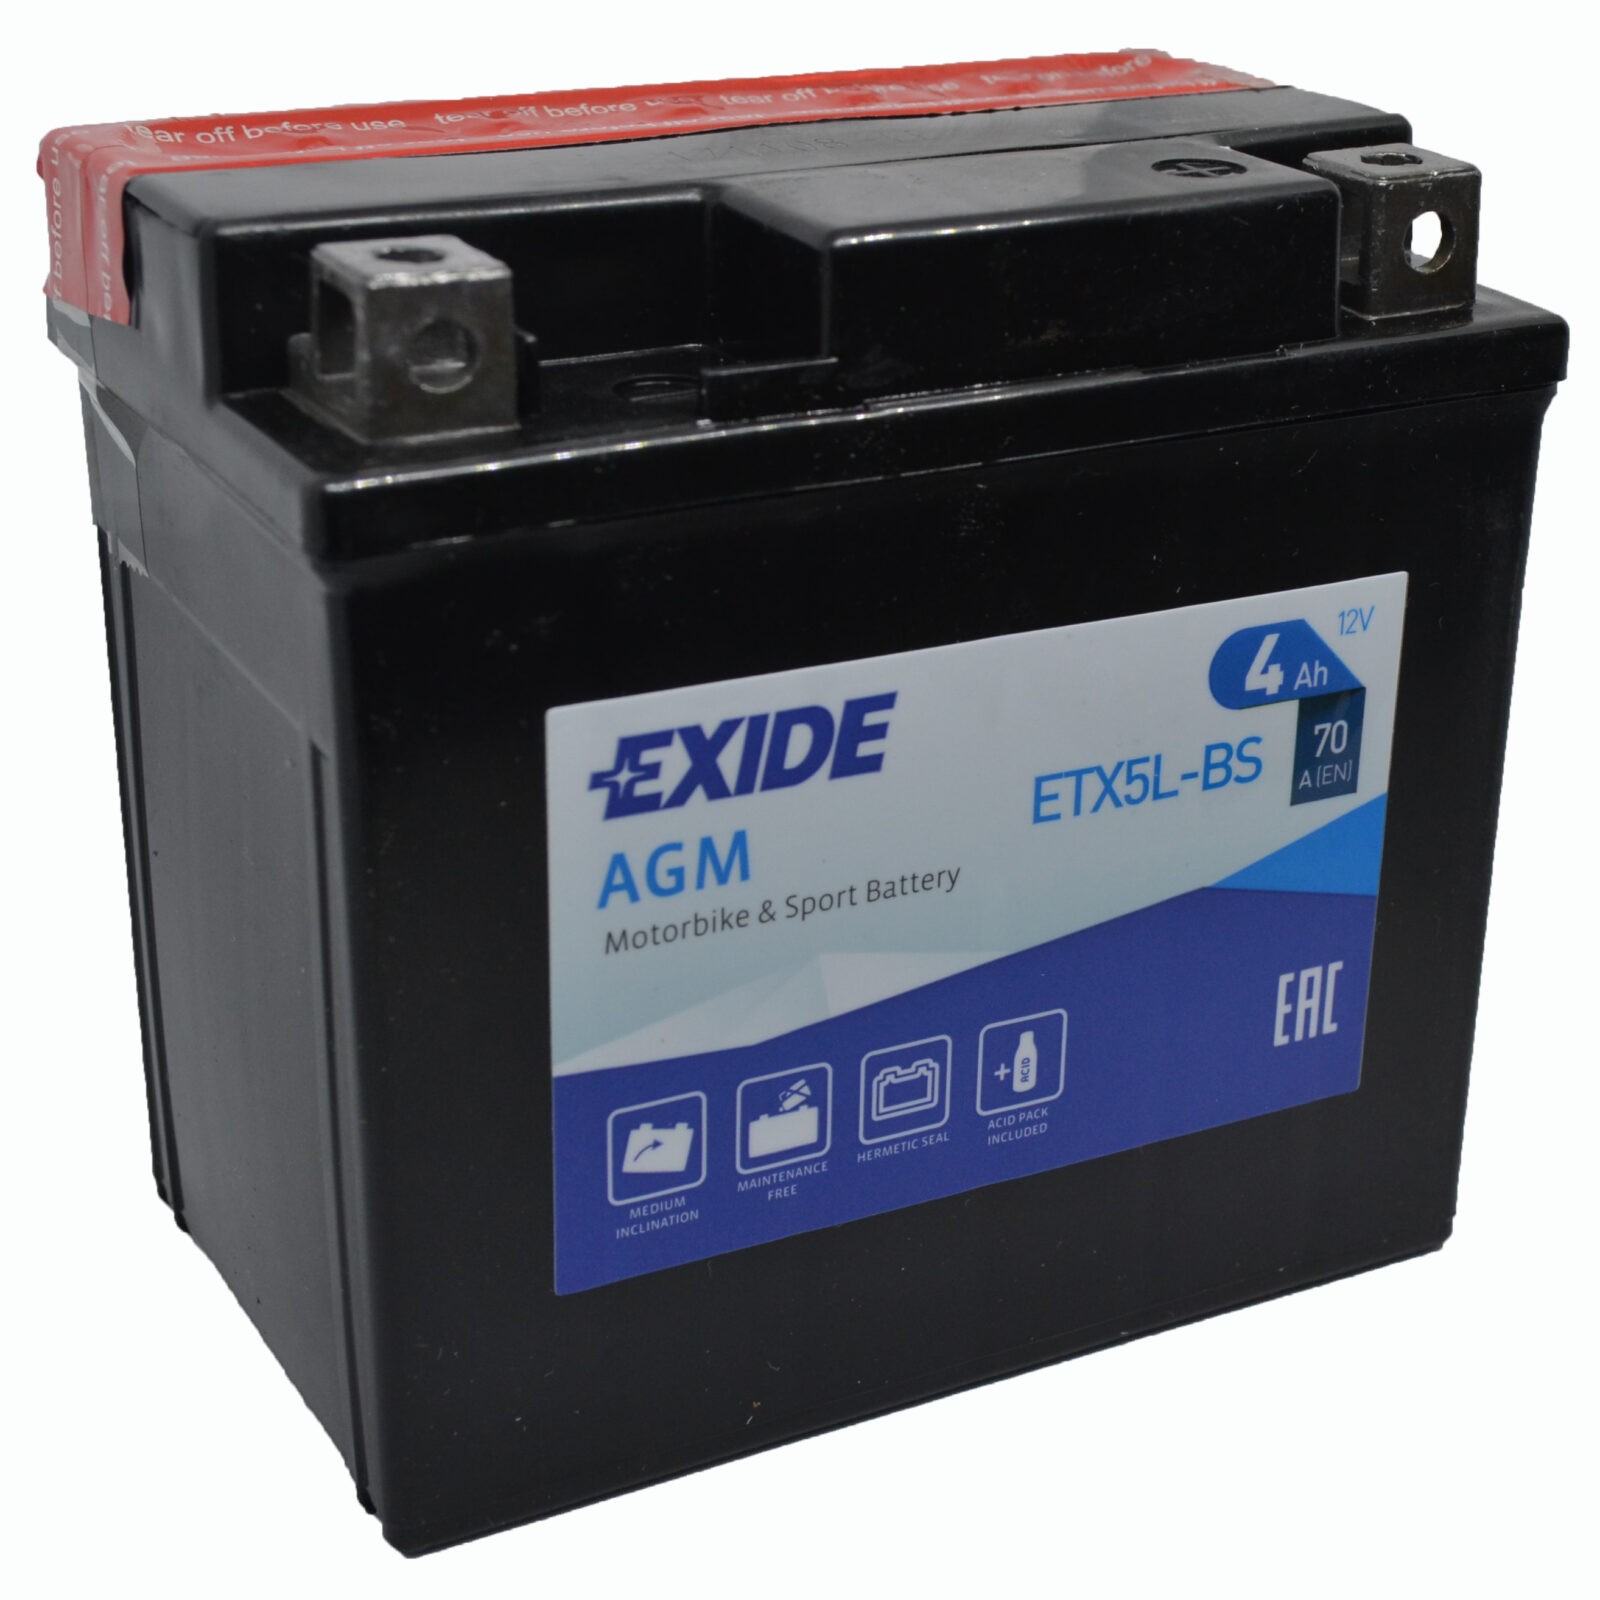 Аккумулятор Exide ETX5L-BS AGM 12 V 4 AH 70 A ETN 0 B0, Exide